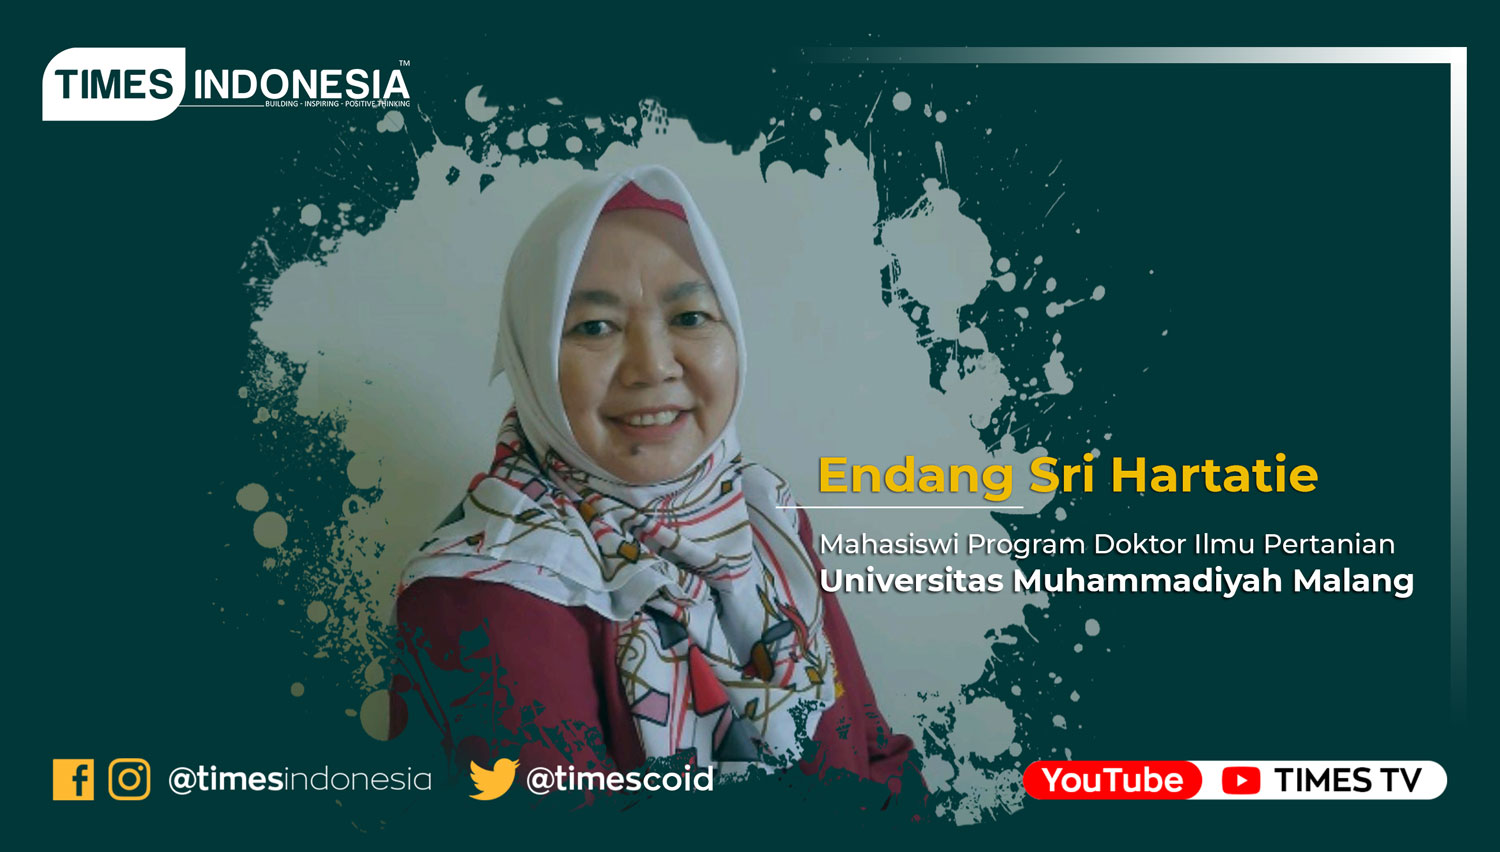 Endang Sri Hartatie, Mahasiswi Program Doktor Ilmu Pertanian Universitas Muhammadiyah Malang